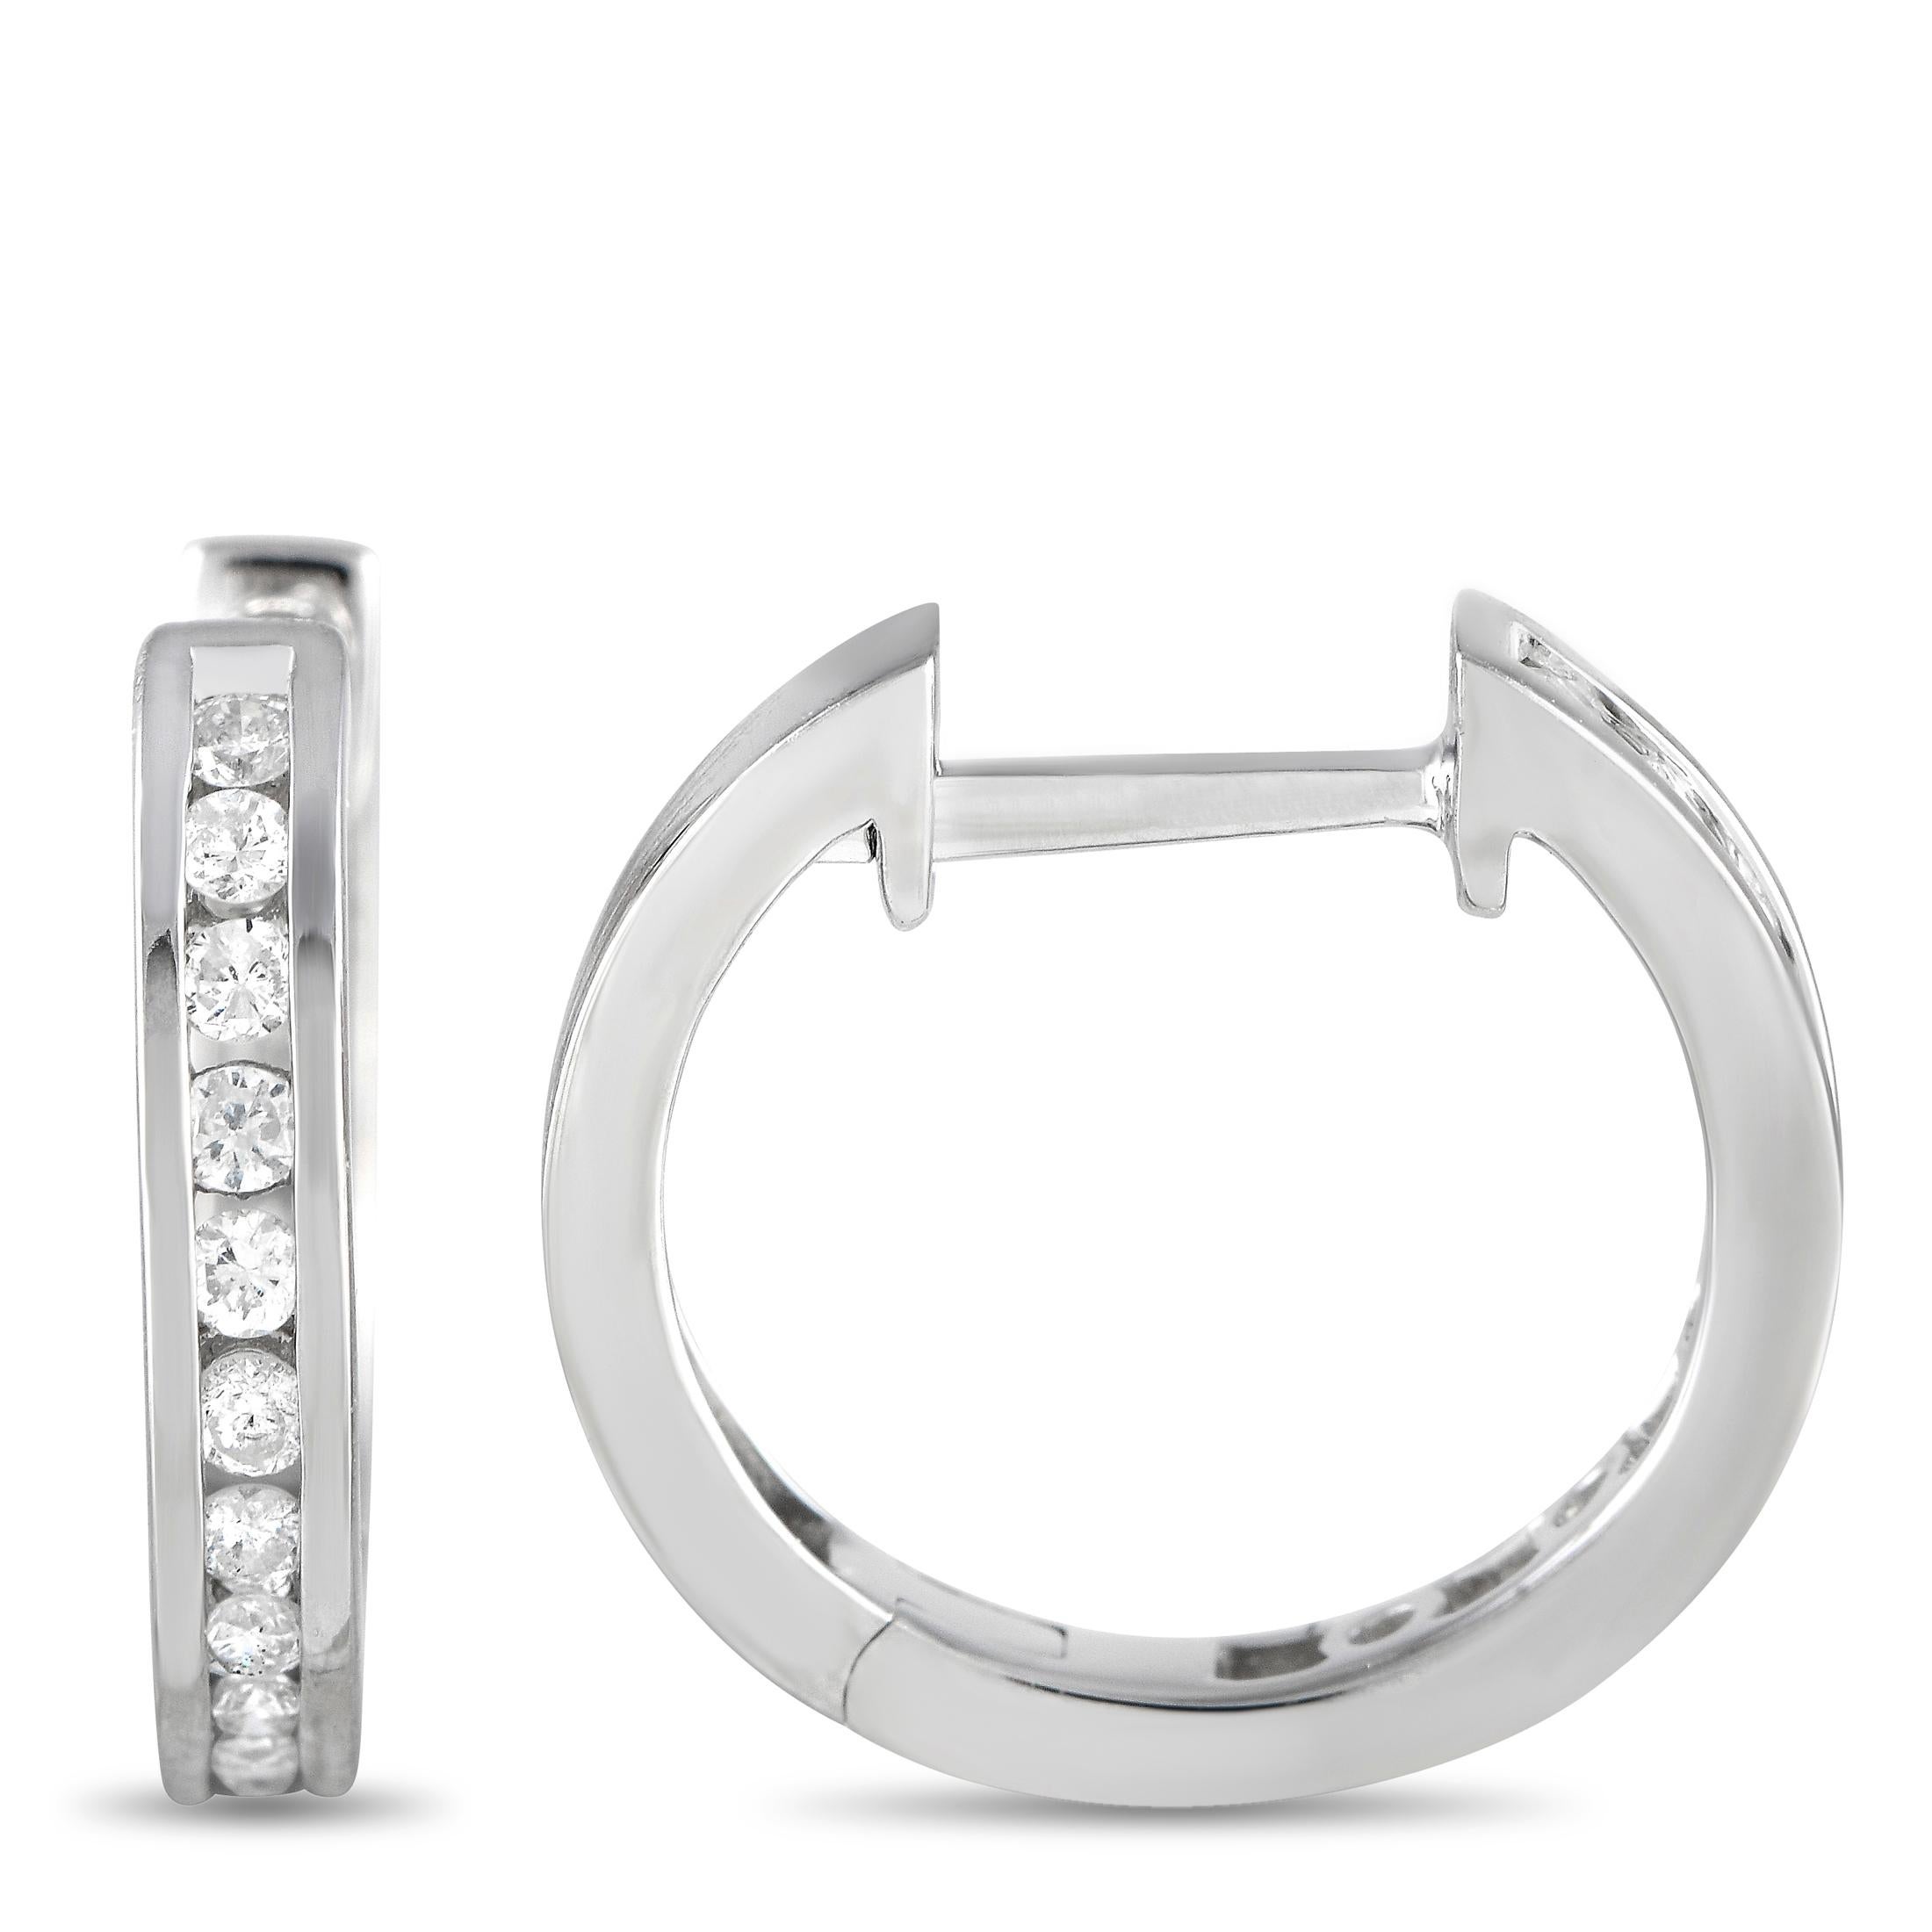 Kanalgefasste Diamanten mit einem Gesamtgewicht von 0,25 Karat lassen diese eleganten, raffinierten Reif-Ohrringe bei jedem Lichteinfall erstrahlen. Jedes Stück ist aus 14K Weißgold gefertigt und misst 0,60